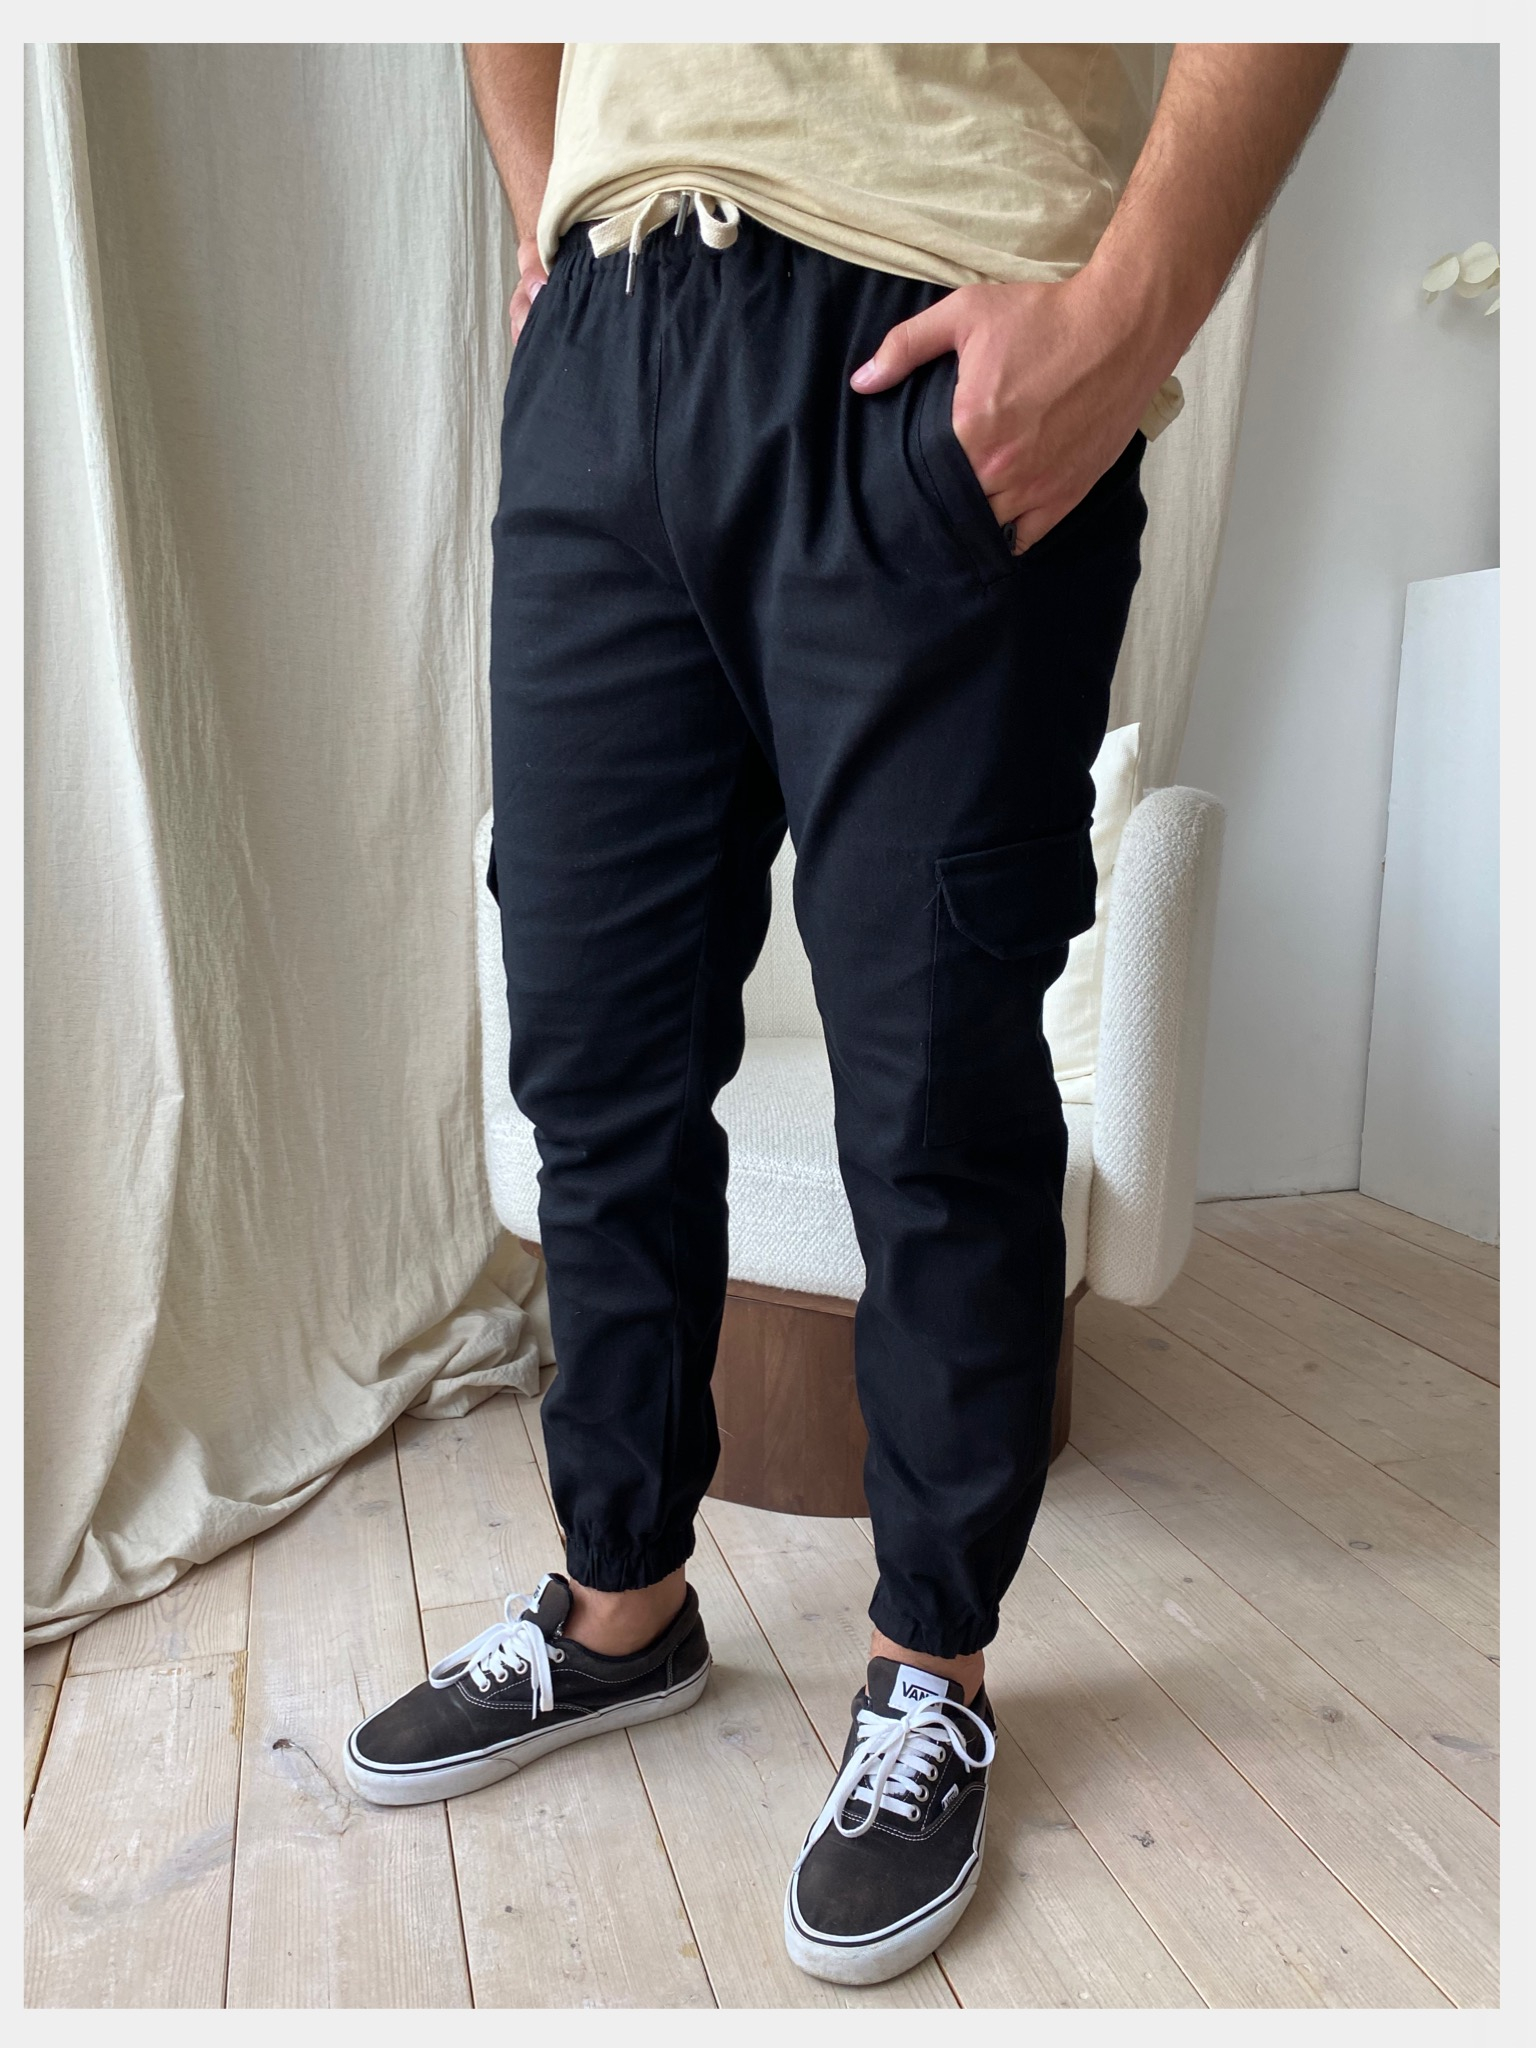 Брюки-джоггеры, джинсовые, мужские купить по цене 1499 ₽ винтернет-магазине KazanExpress